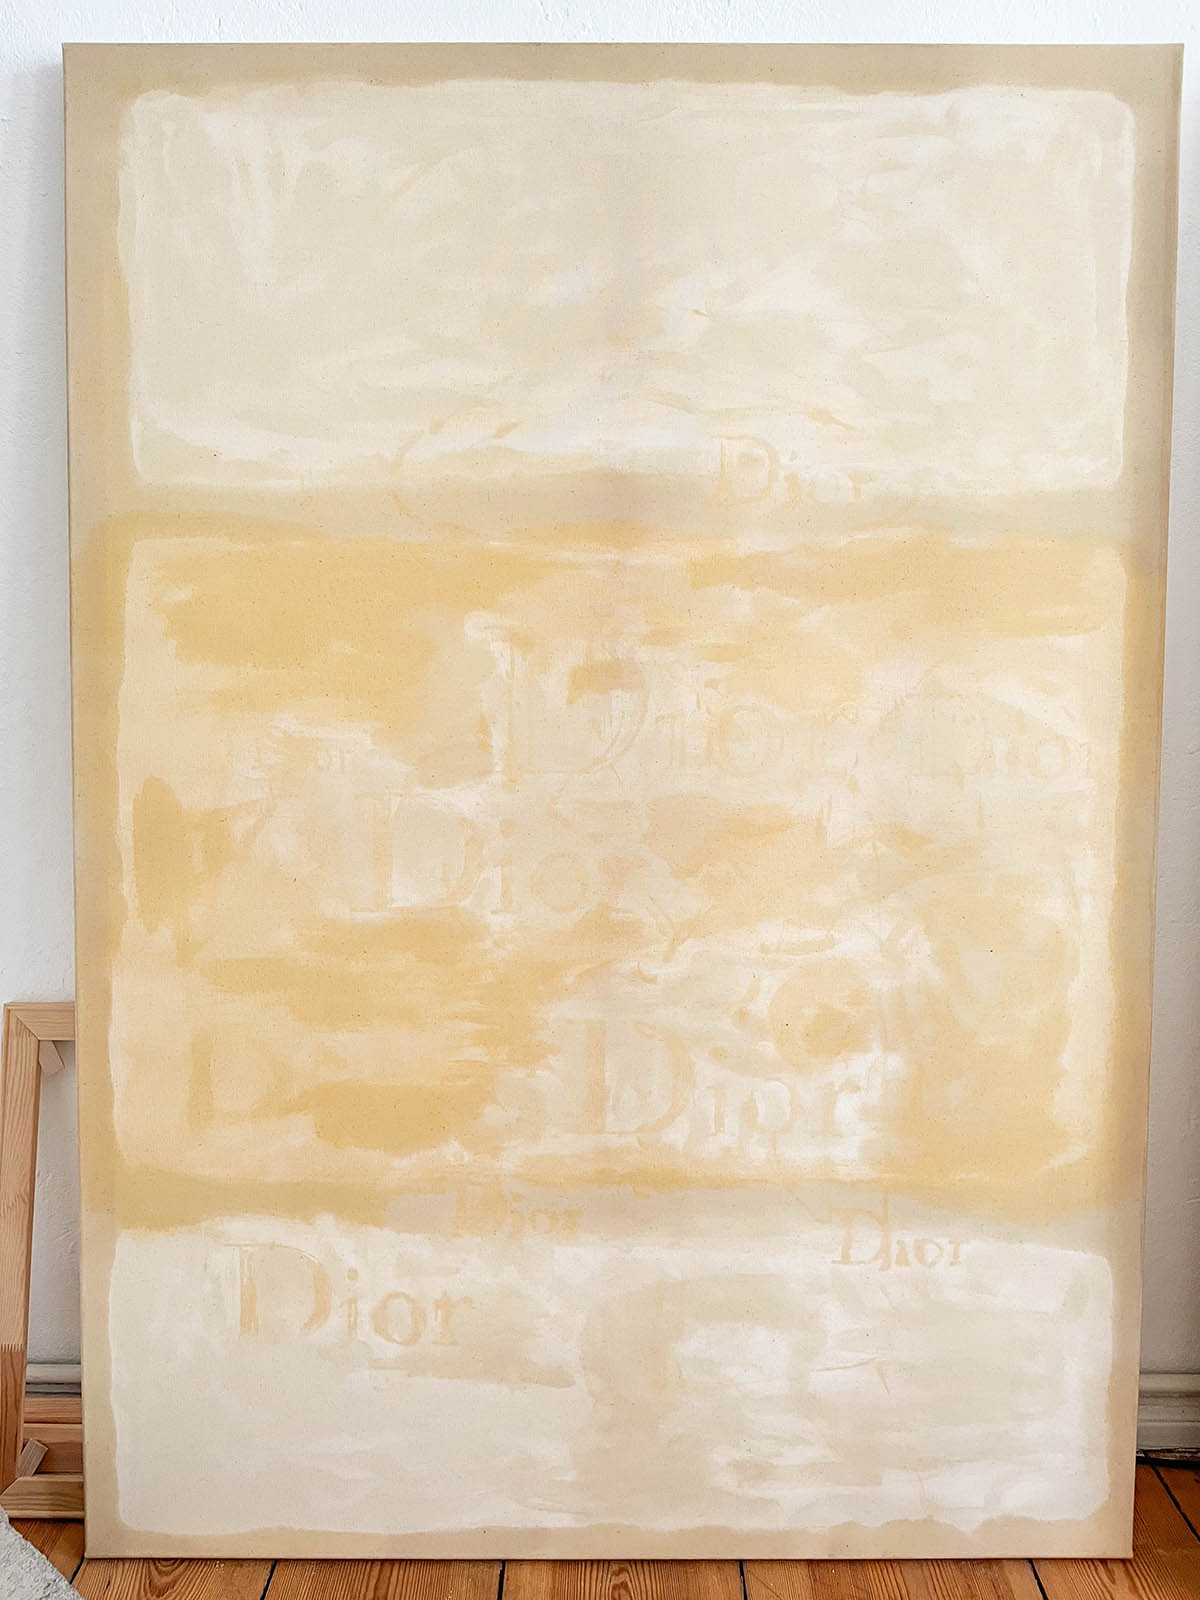 Modische Öle, 165 x 119 cm., Mohnöl, Sonneblumenöl und Leinöl auf Leinwand, 2021